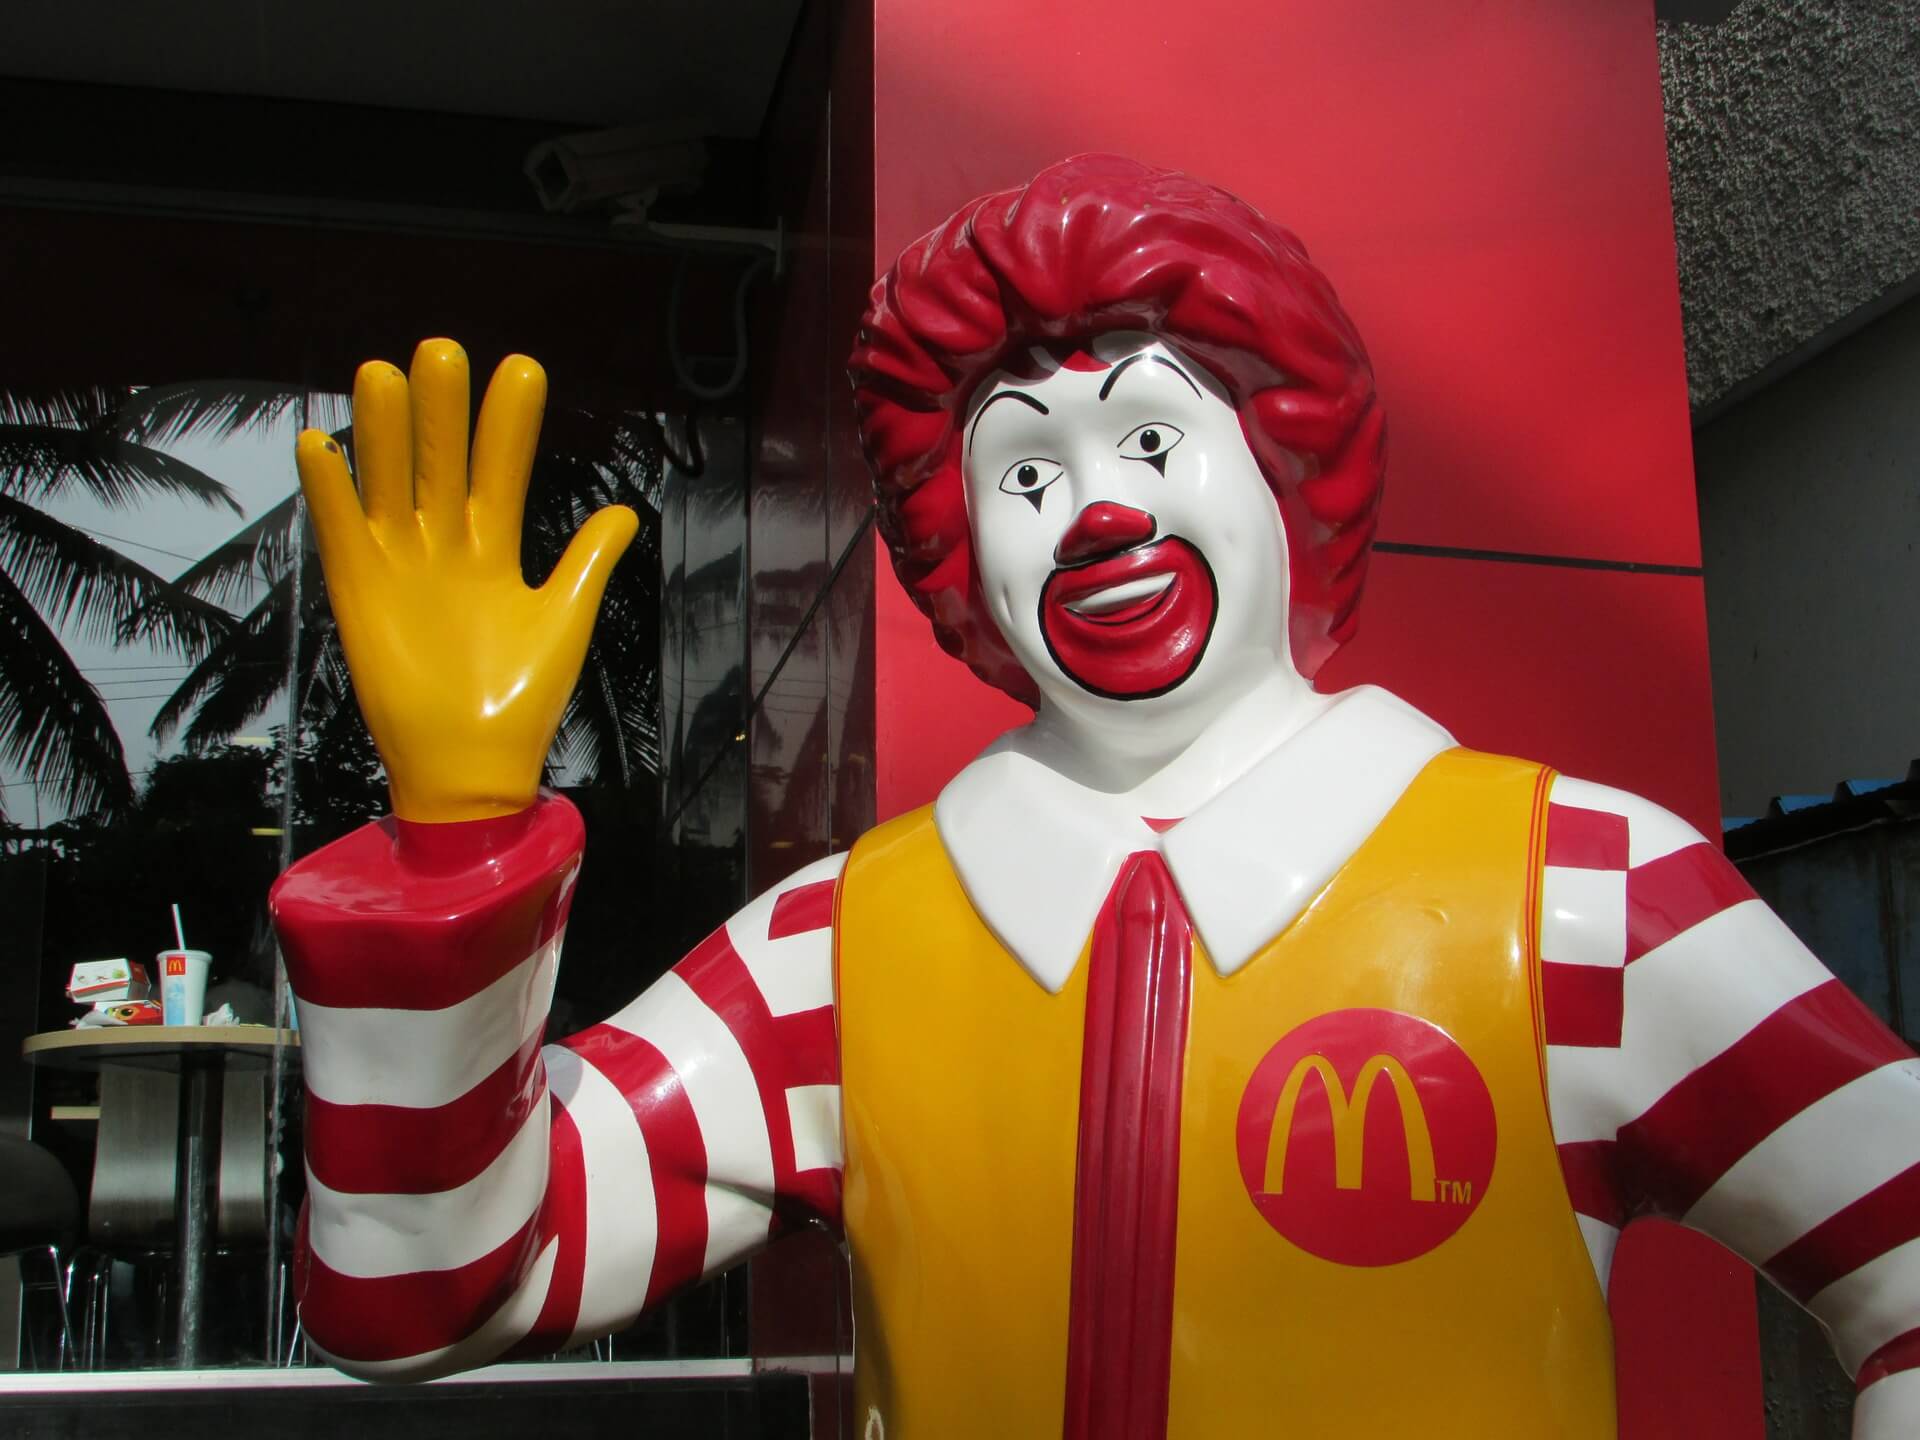 Statue of McDonald's mascot Ronald McDonald waving